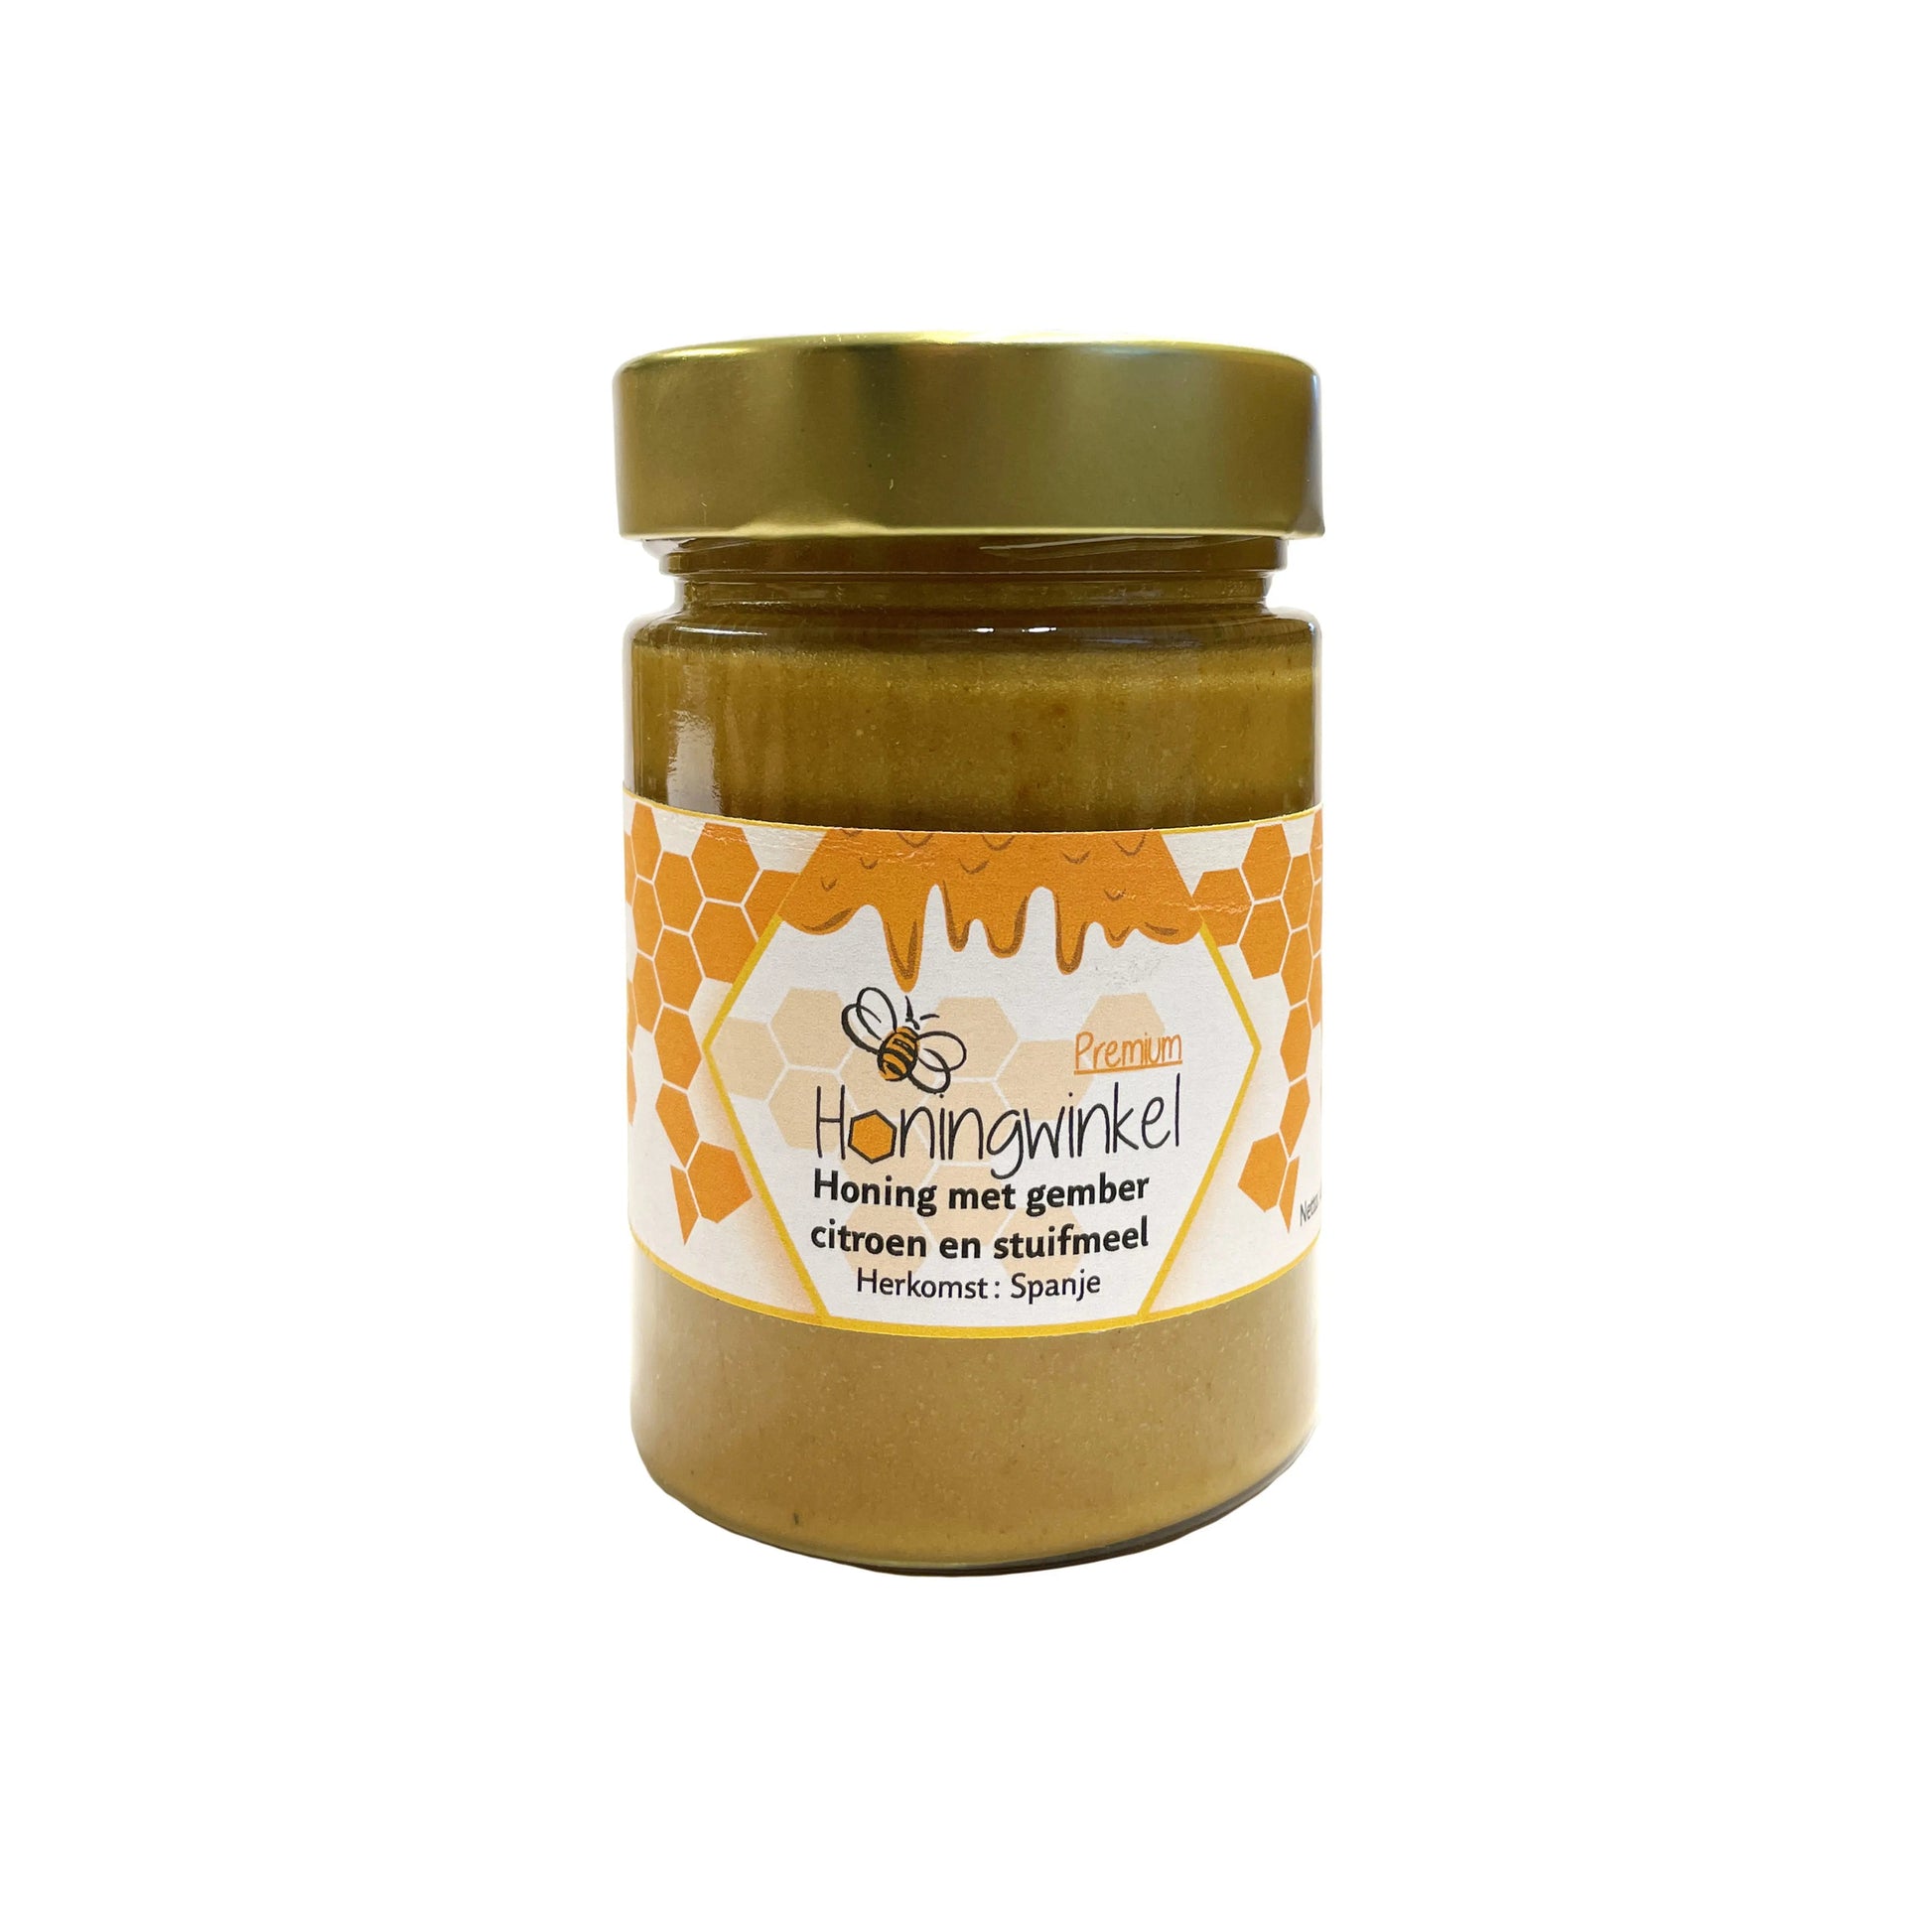 Premium honing met gember, citroen en stuifmeel Spanje 450g Honingwinkel (crème) - Honingwinkel